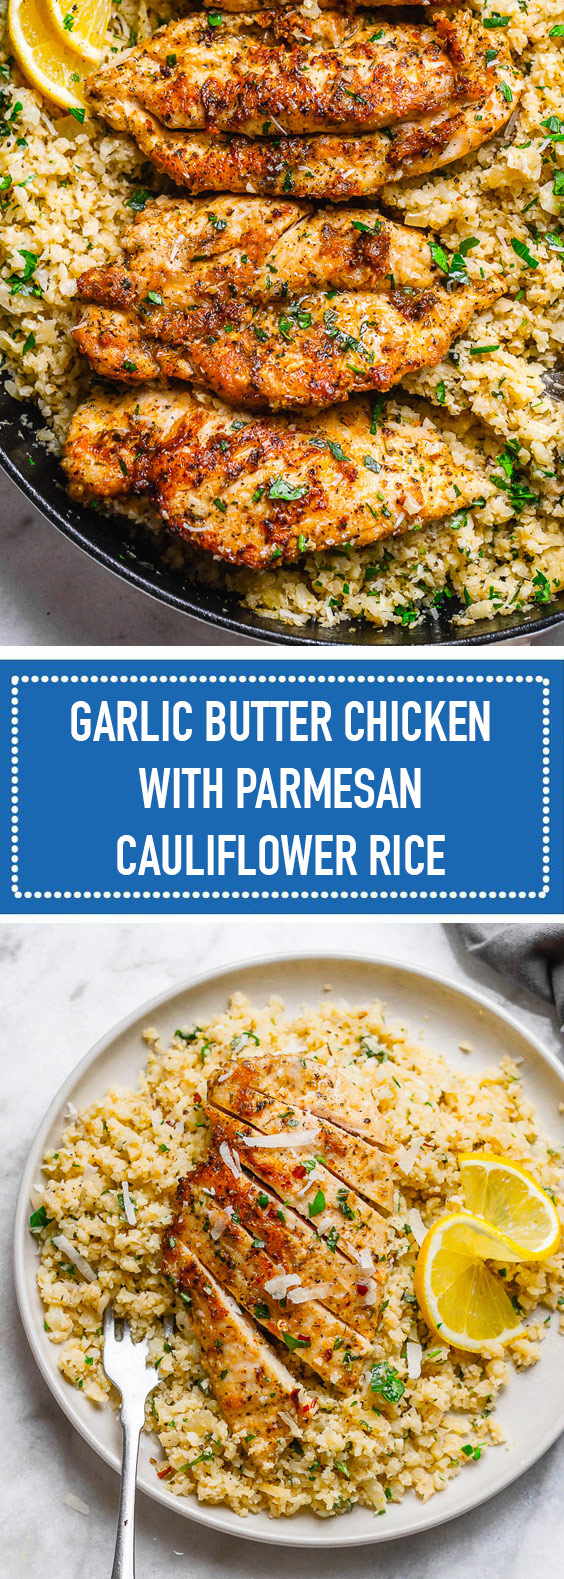 Garlic Butter Chicken with Parmesan Cauliflower Rice